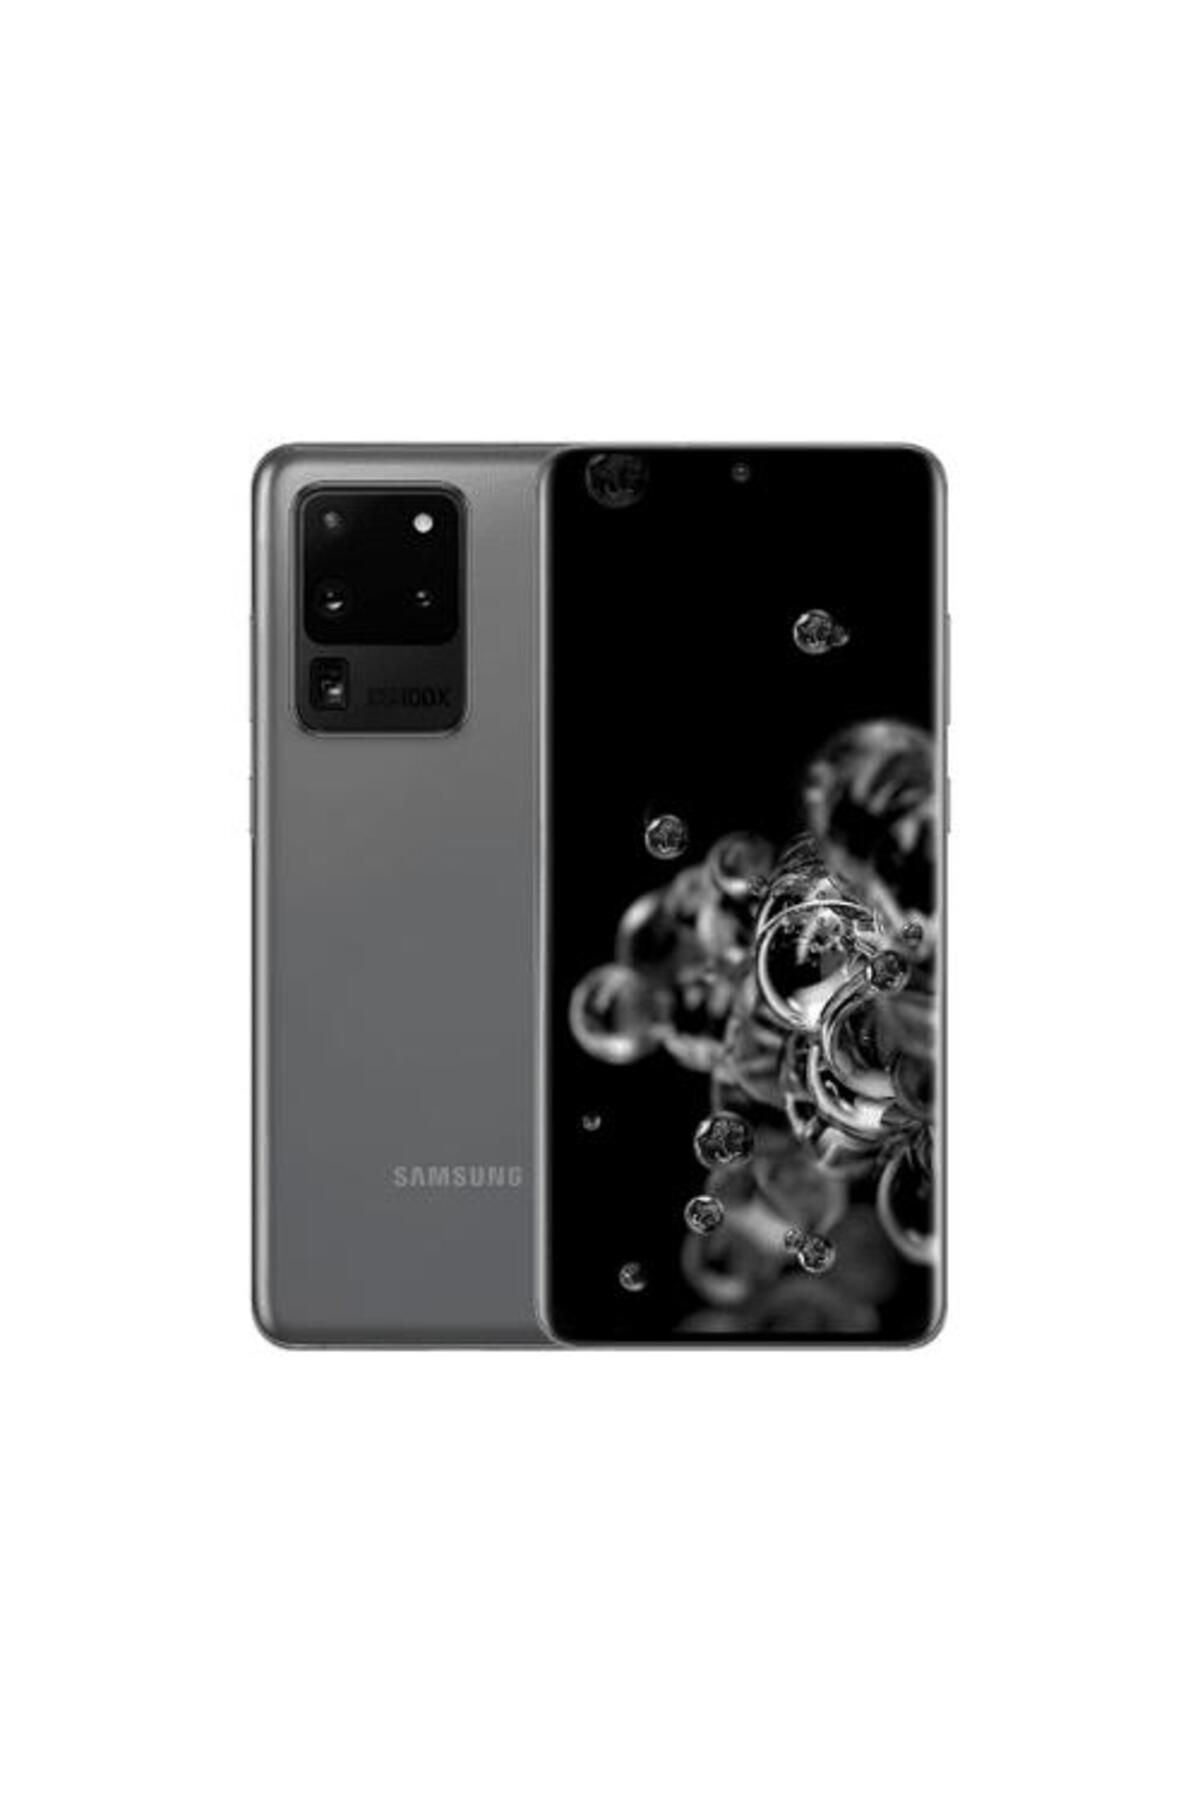 Samsung Yenilenmiş SAMSUNG GALAXY S20 ULTRA 128GB -B Kalite- Gri